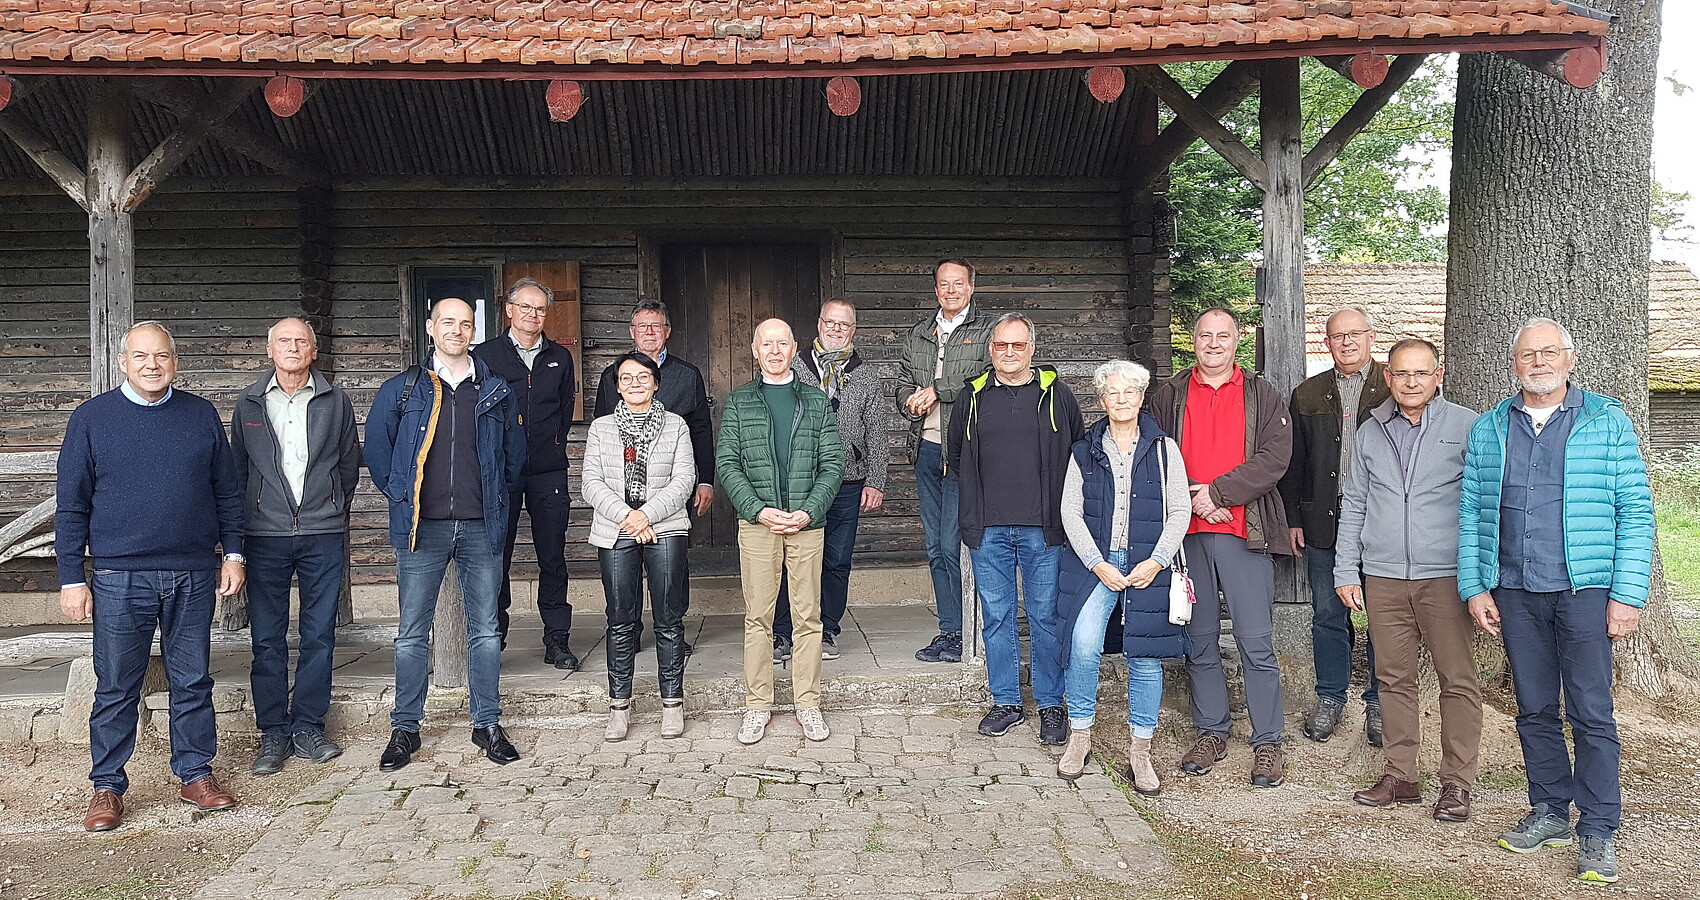 Im Bild stehen die Naturschutzbeaufragten gemeinsam mit dem Rgeirungspräsidenten und Vertreterinnen und Vertretern des Regierungspräsidums Tübingen vor einer Hütte im Wald.